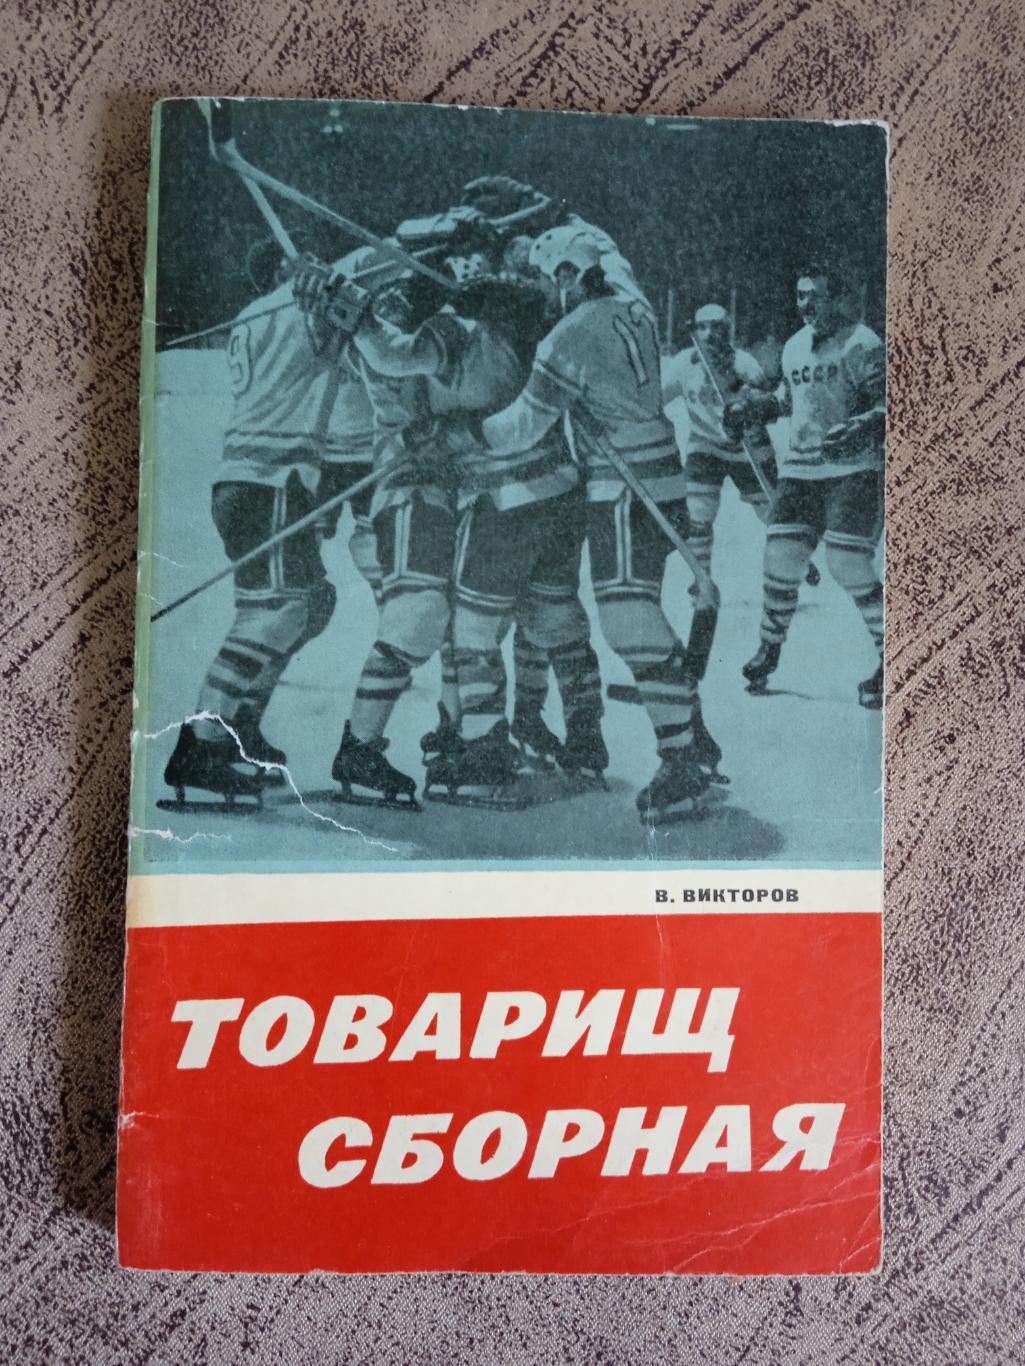 В.Викторов.Товарищ сборная.Советская Россия 1969 г.